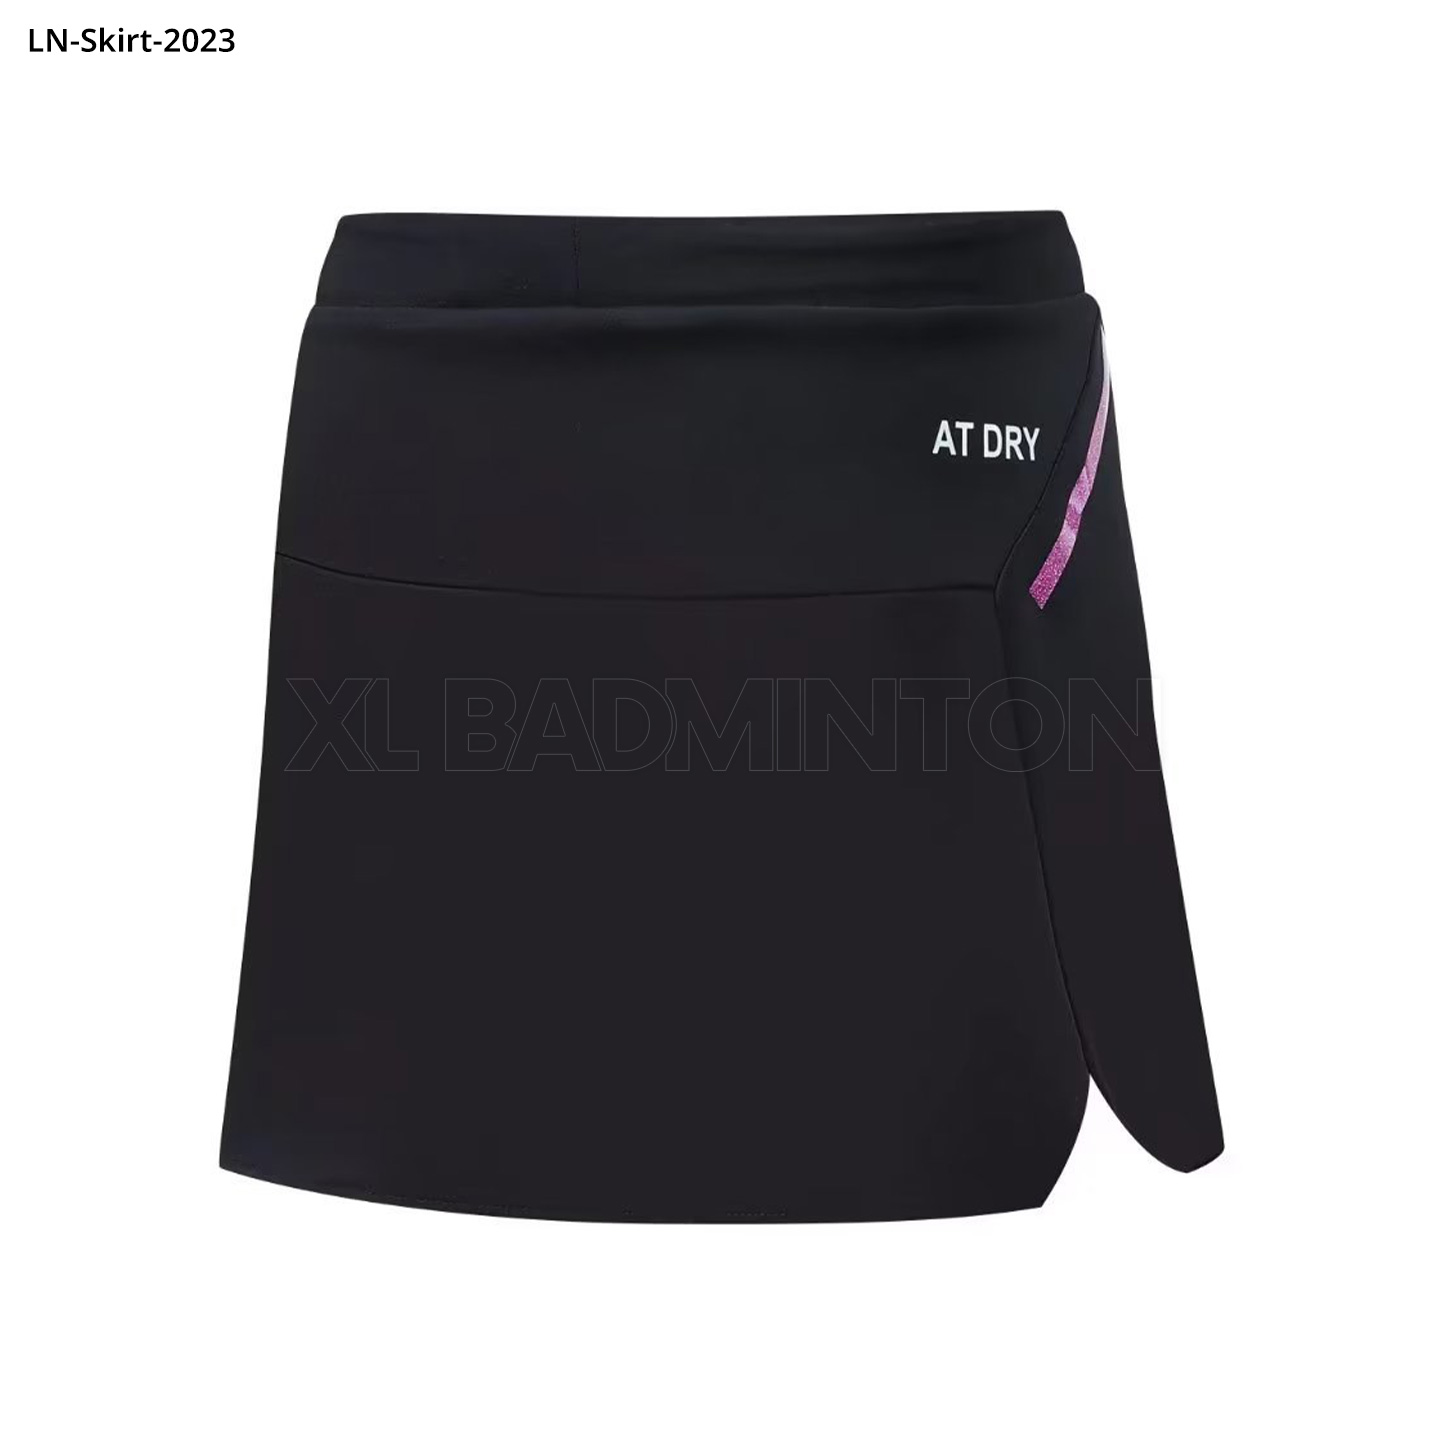 ln-skirt-2023-black-2